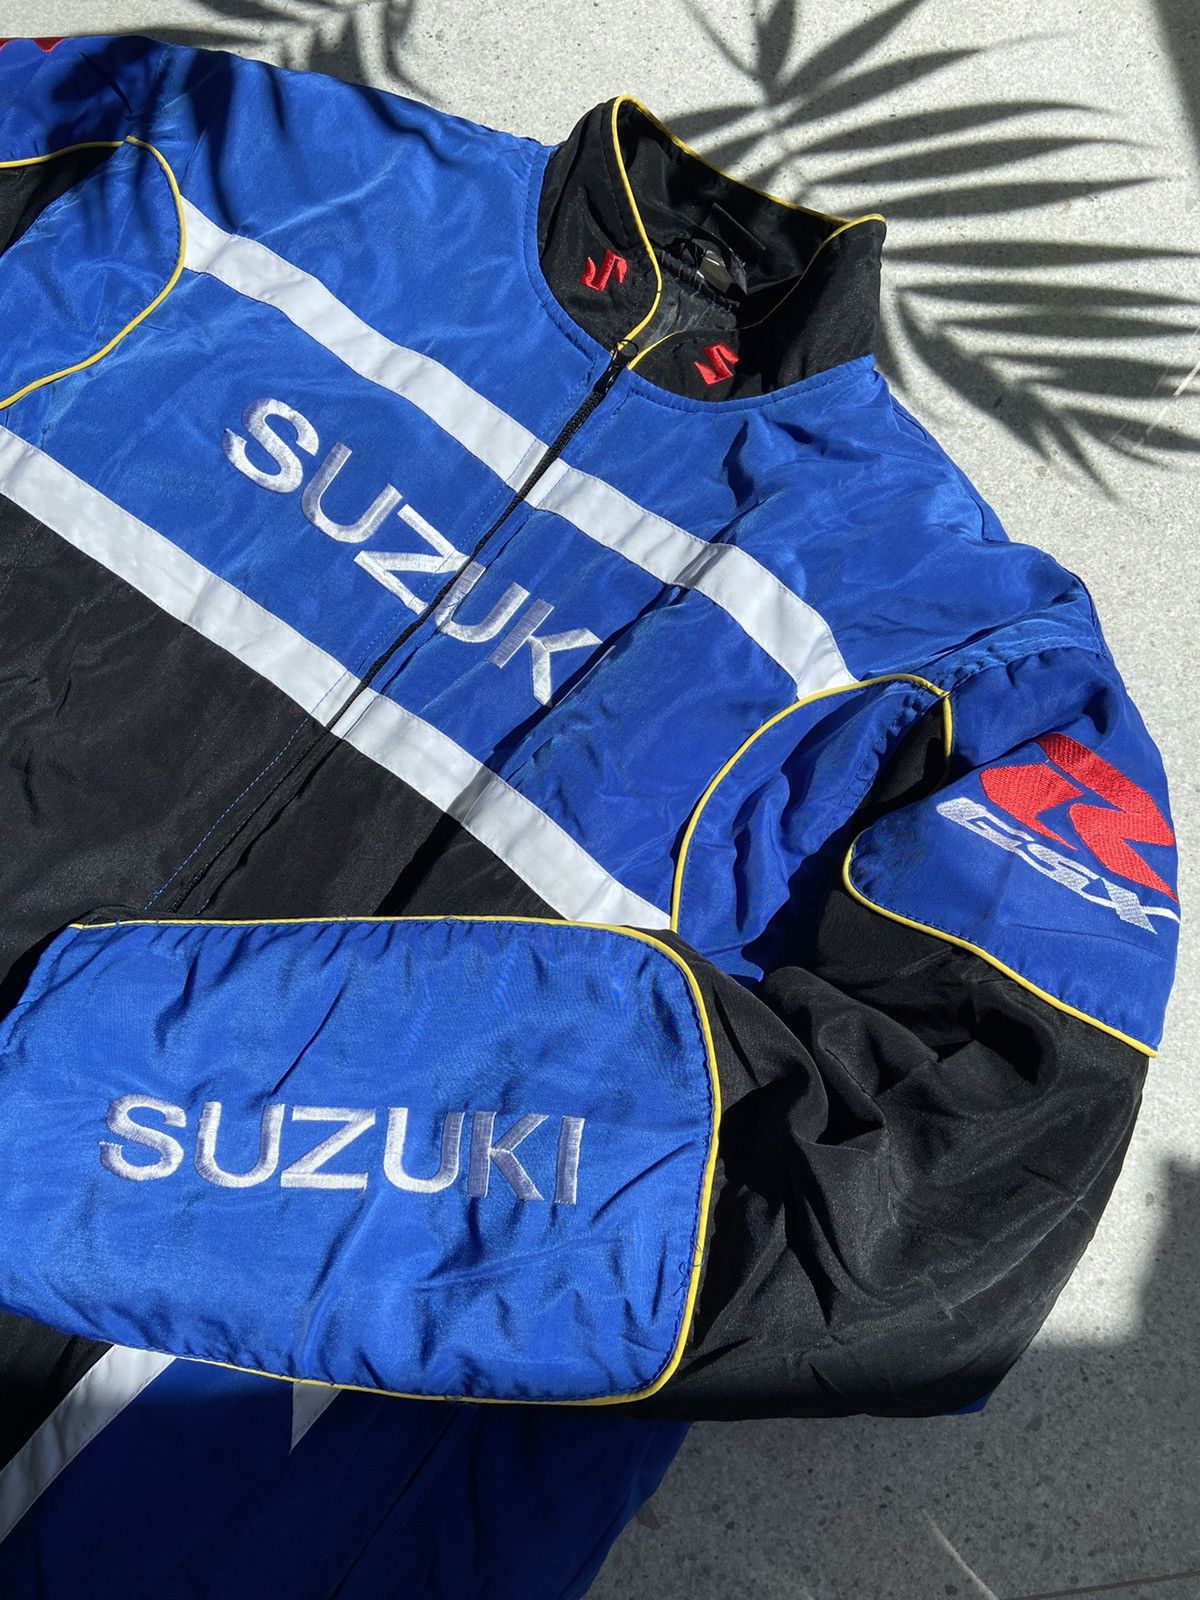 Pre-owned Racing Vintage Suzuki  Team Jacket In Blue